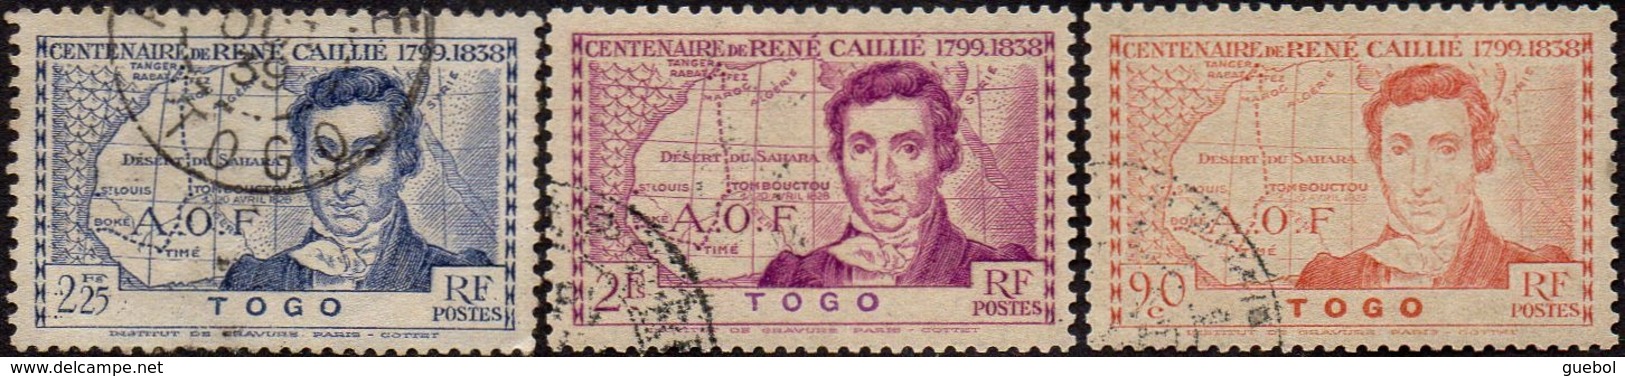 Détail De La Série Centenaire René Caillié Obl. Togo N° 172 à 174 - 1939 Centenaire De René Caillé